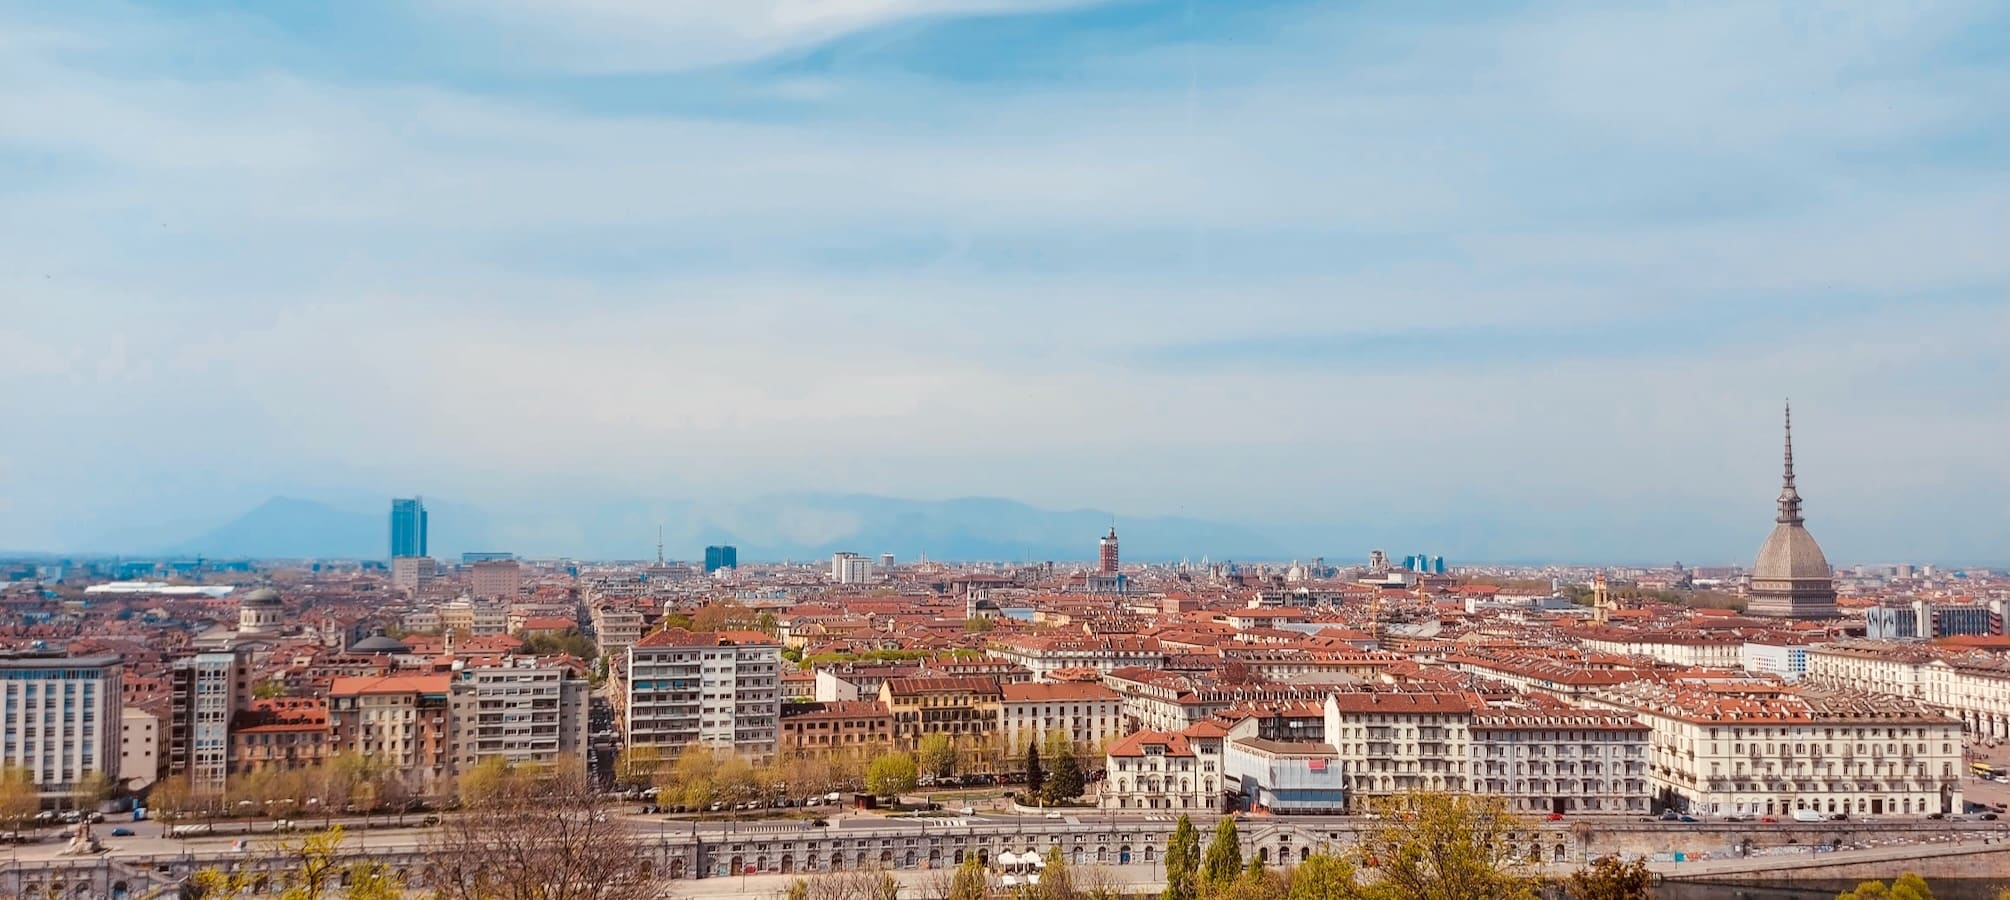 Blick auf Turin vom Monte dei Cappuccini